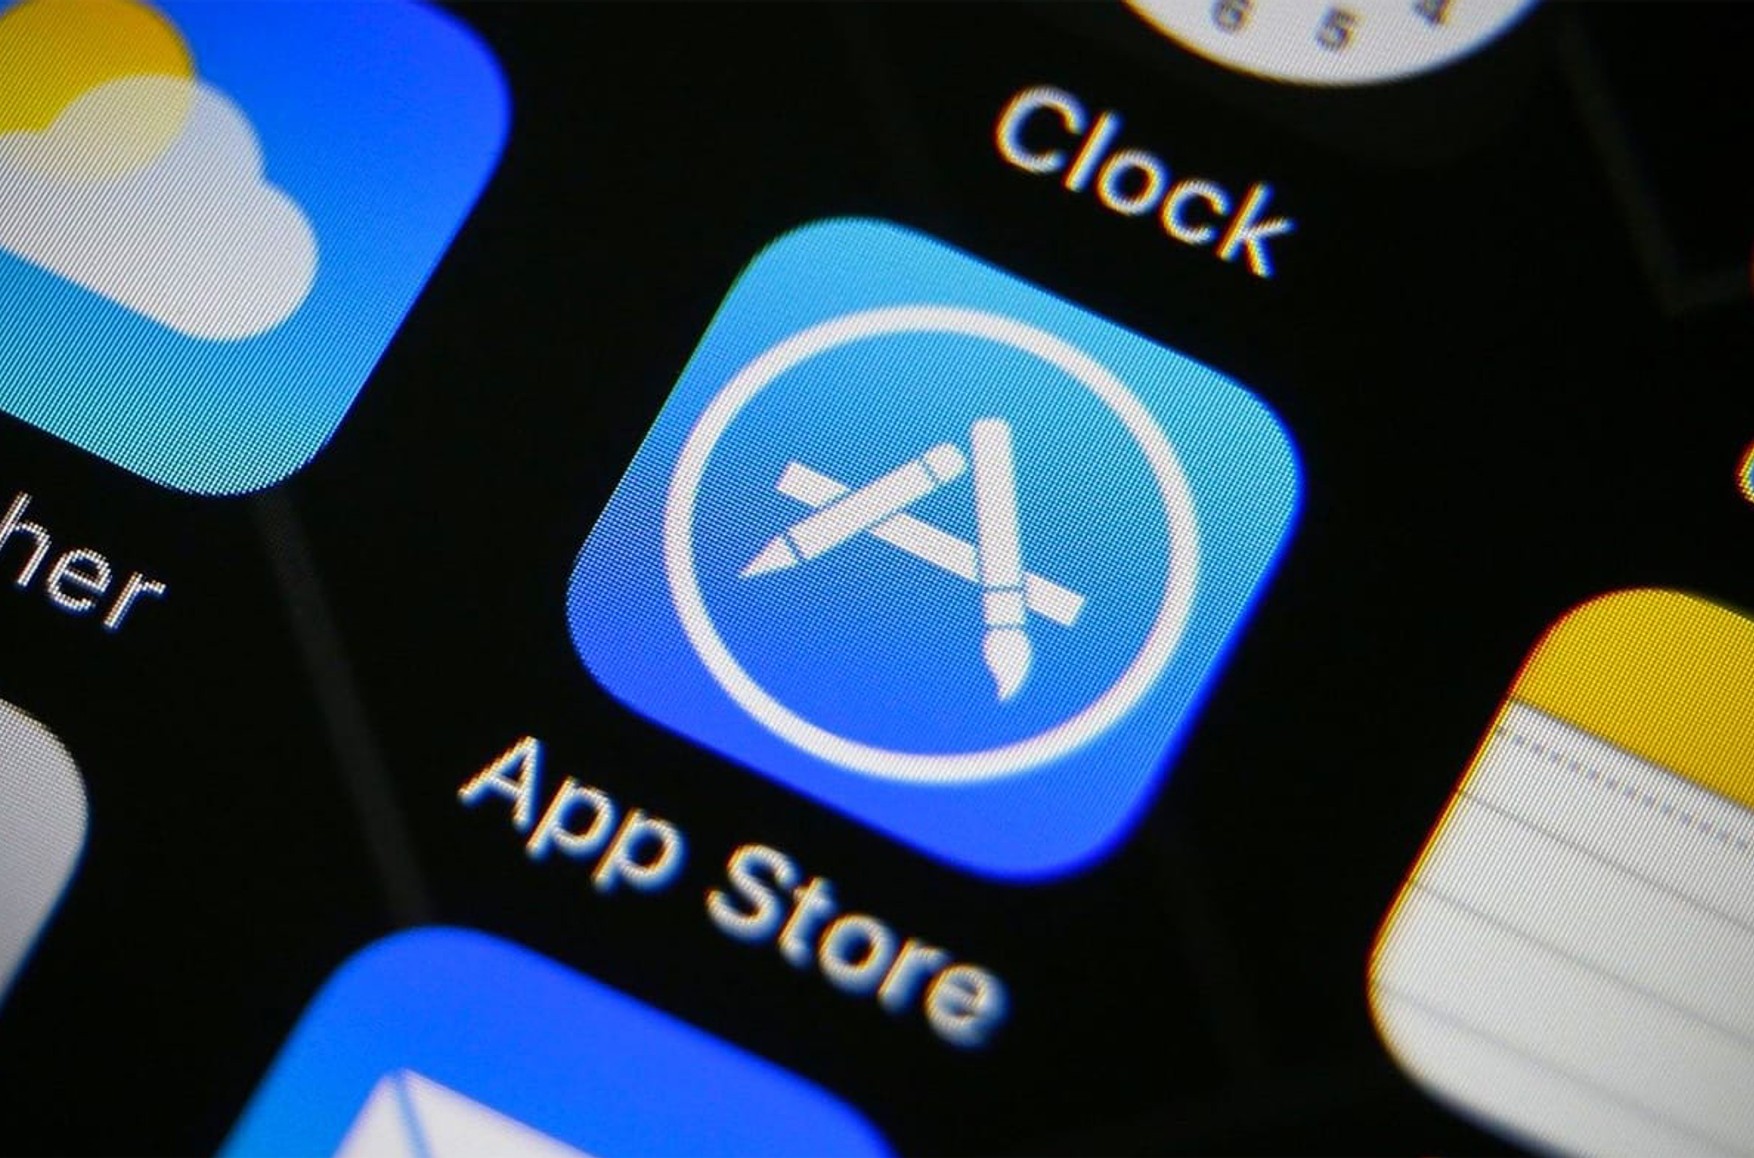 Користувачі App Store в Росії поскаржилися, що не можуть завантажити або оновити додатки. Це вийдуть зробити тільки за допомогою VPN